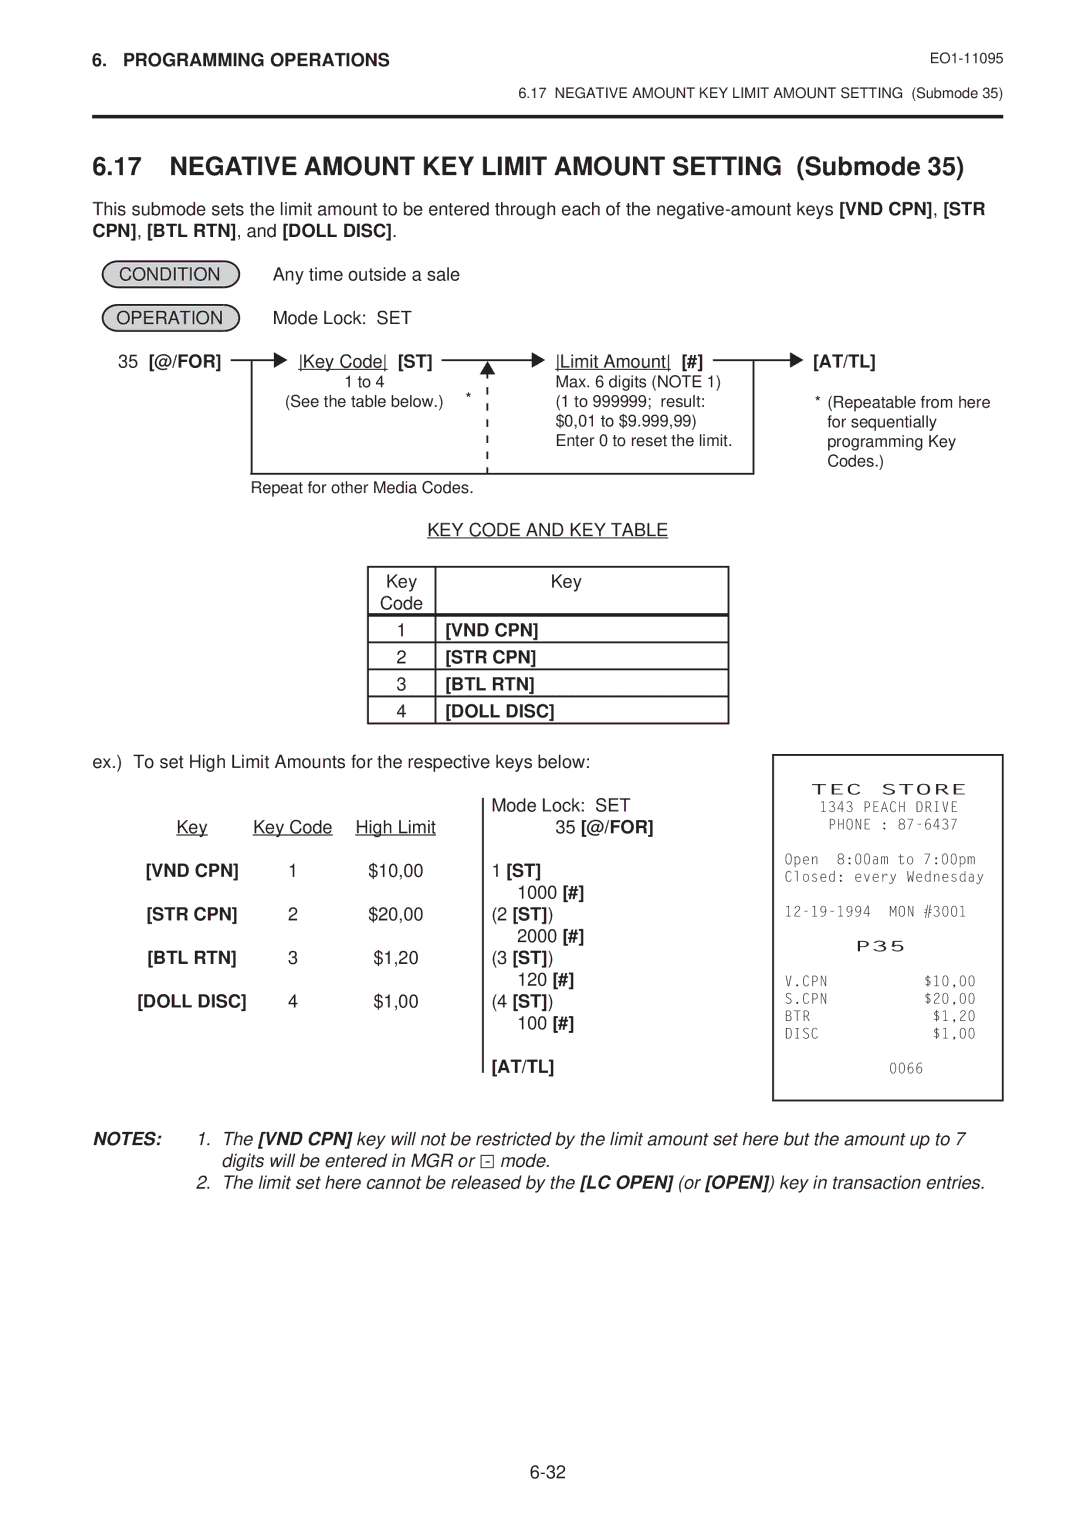 Toshiba EO1-11095 Negative Amount KEY Limit Amount Setting Submode, KEY Code and KEY Table, 35 @/FOR ST 1000 # 